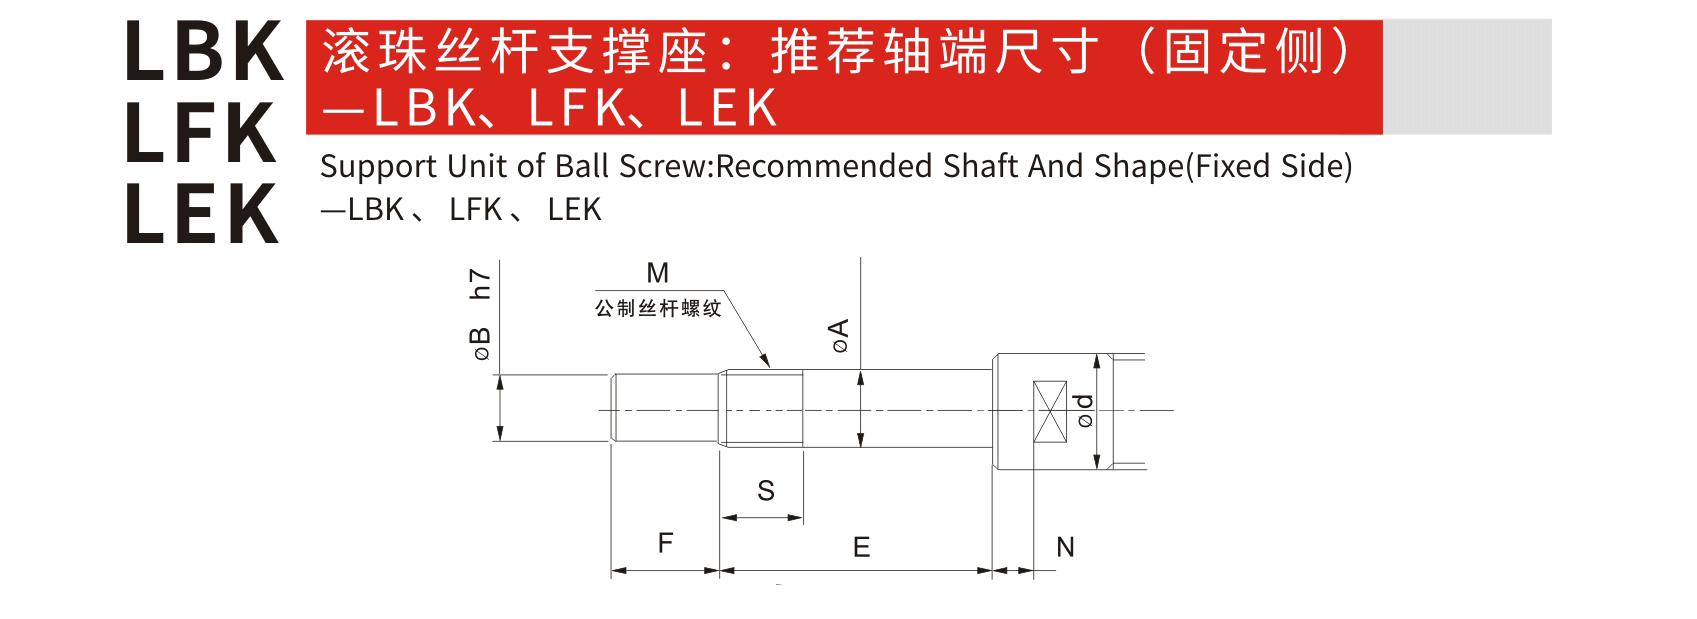 LBK 固定側_聯軸器種類-廣州菱科自動化設備有限公司